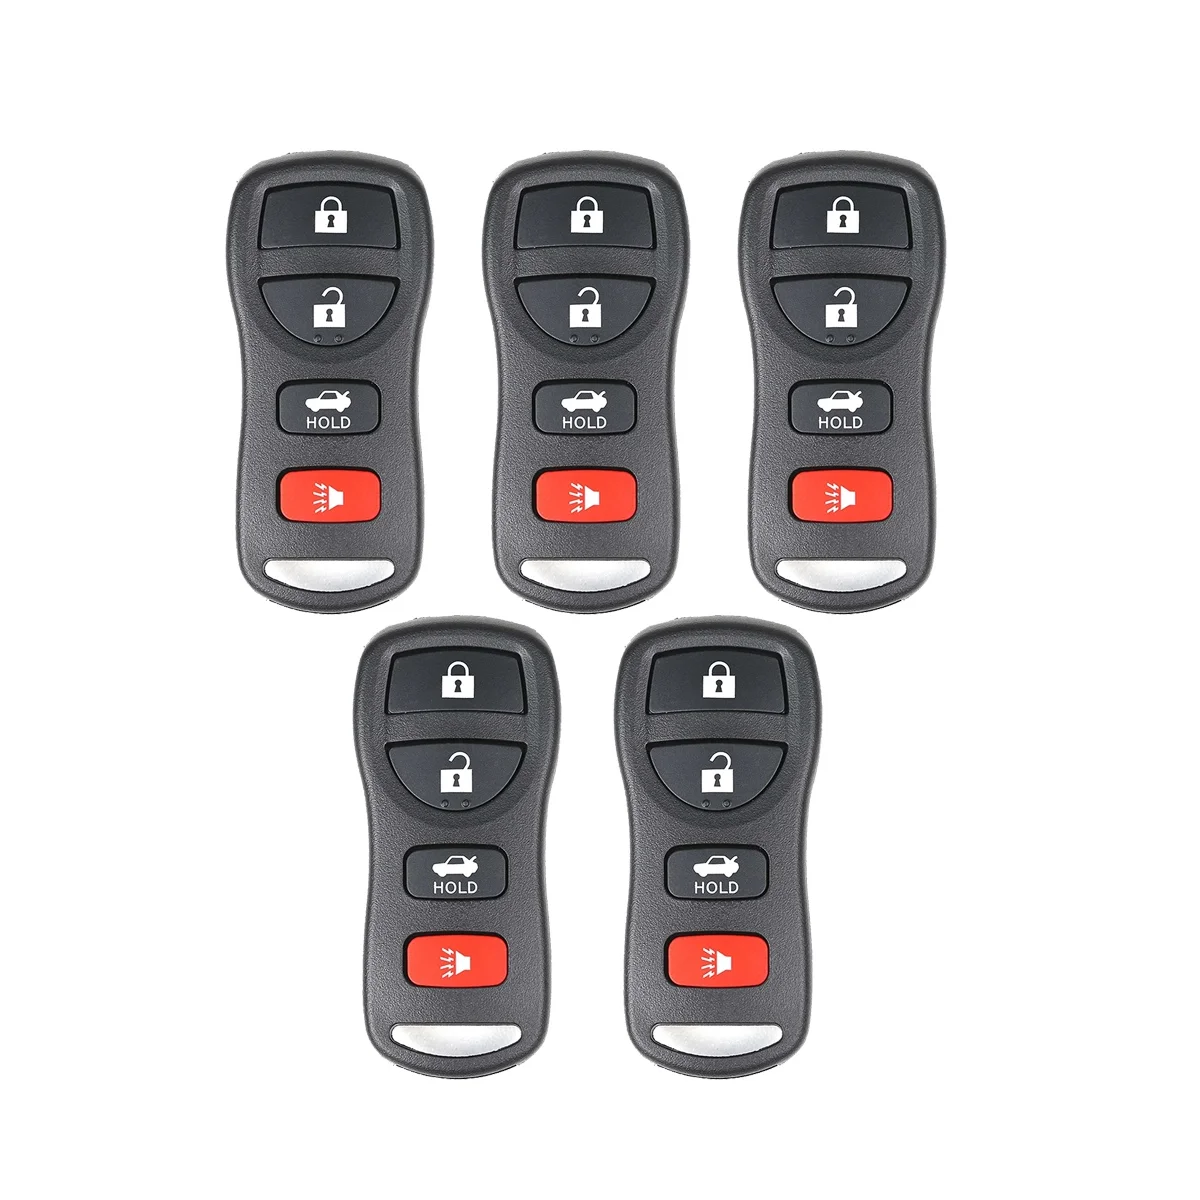 

Брелок для ключей Xhorse XKNI00EN, Универсальный проводной дистанционный брелок для ключей с откидной крышкой с 4 кнопками для NISSAN Style, для ключей VVDI, 5 шт./партия